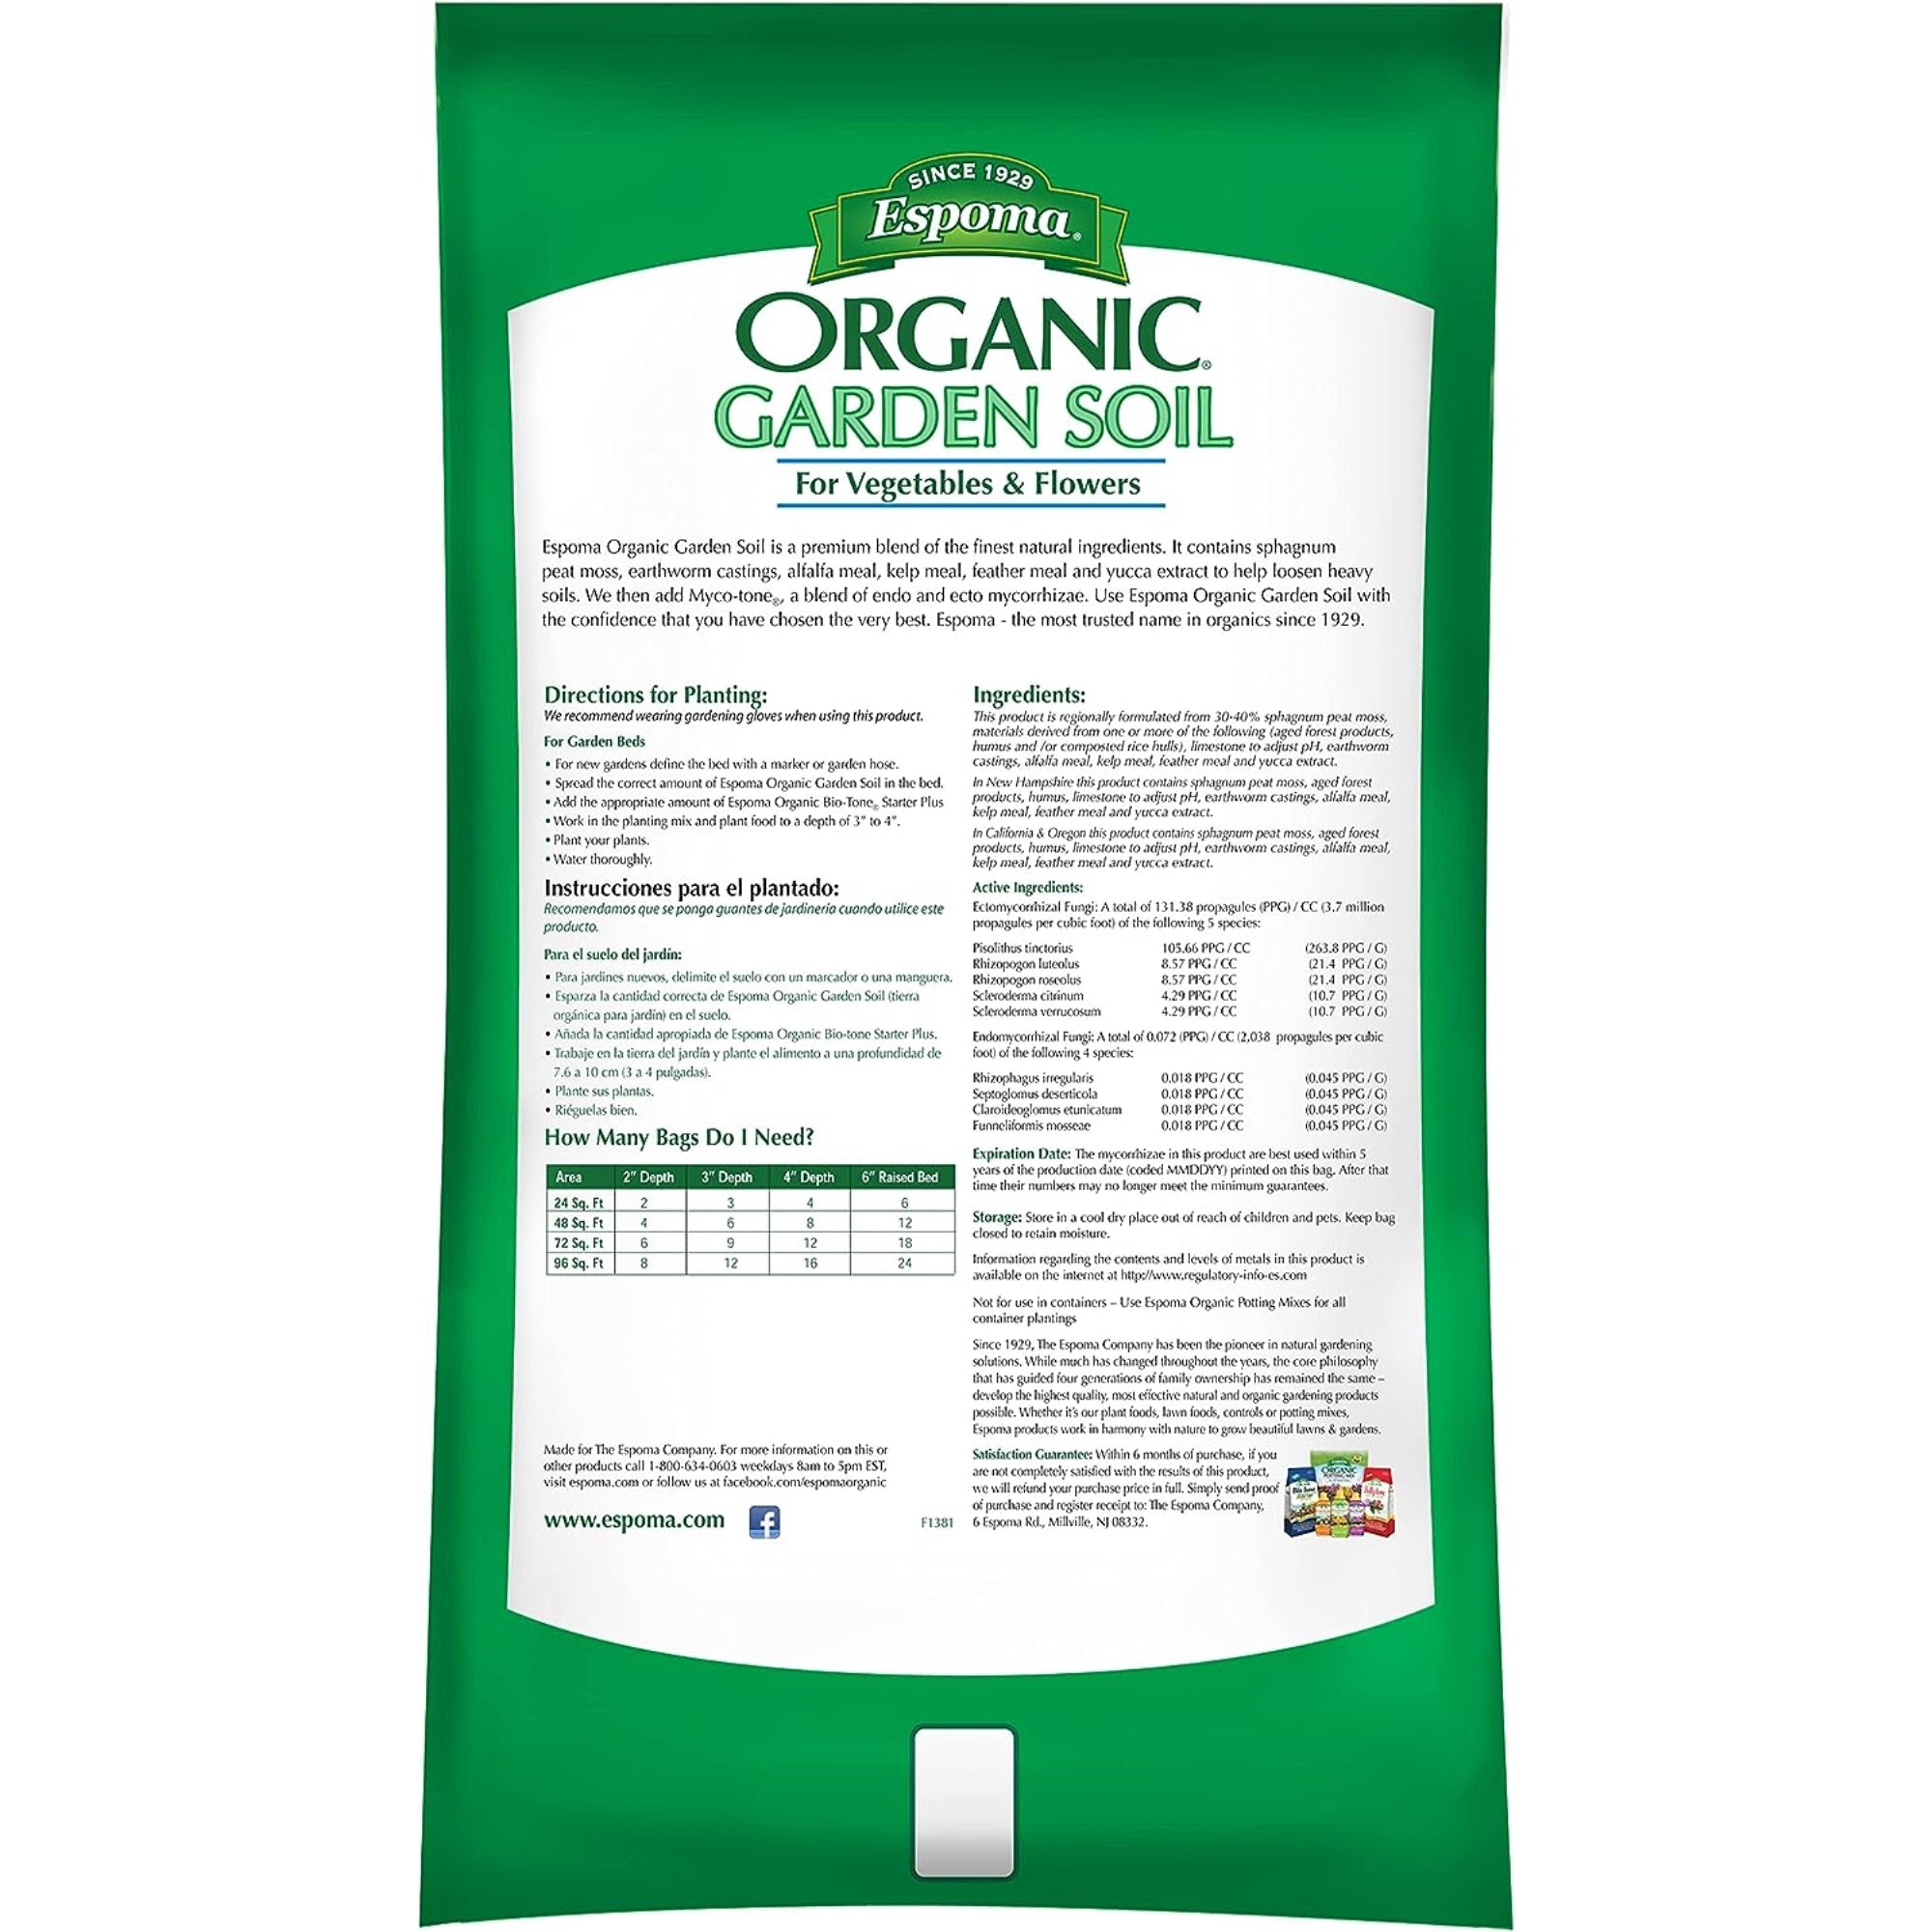 Espoma Organic Garden Soil for Vegetables & Flowers, for In-Ground Plantings, for Organic Gardening, 1 CF Bag